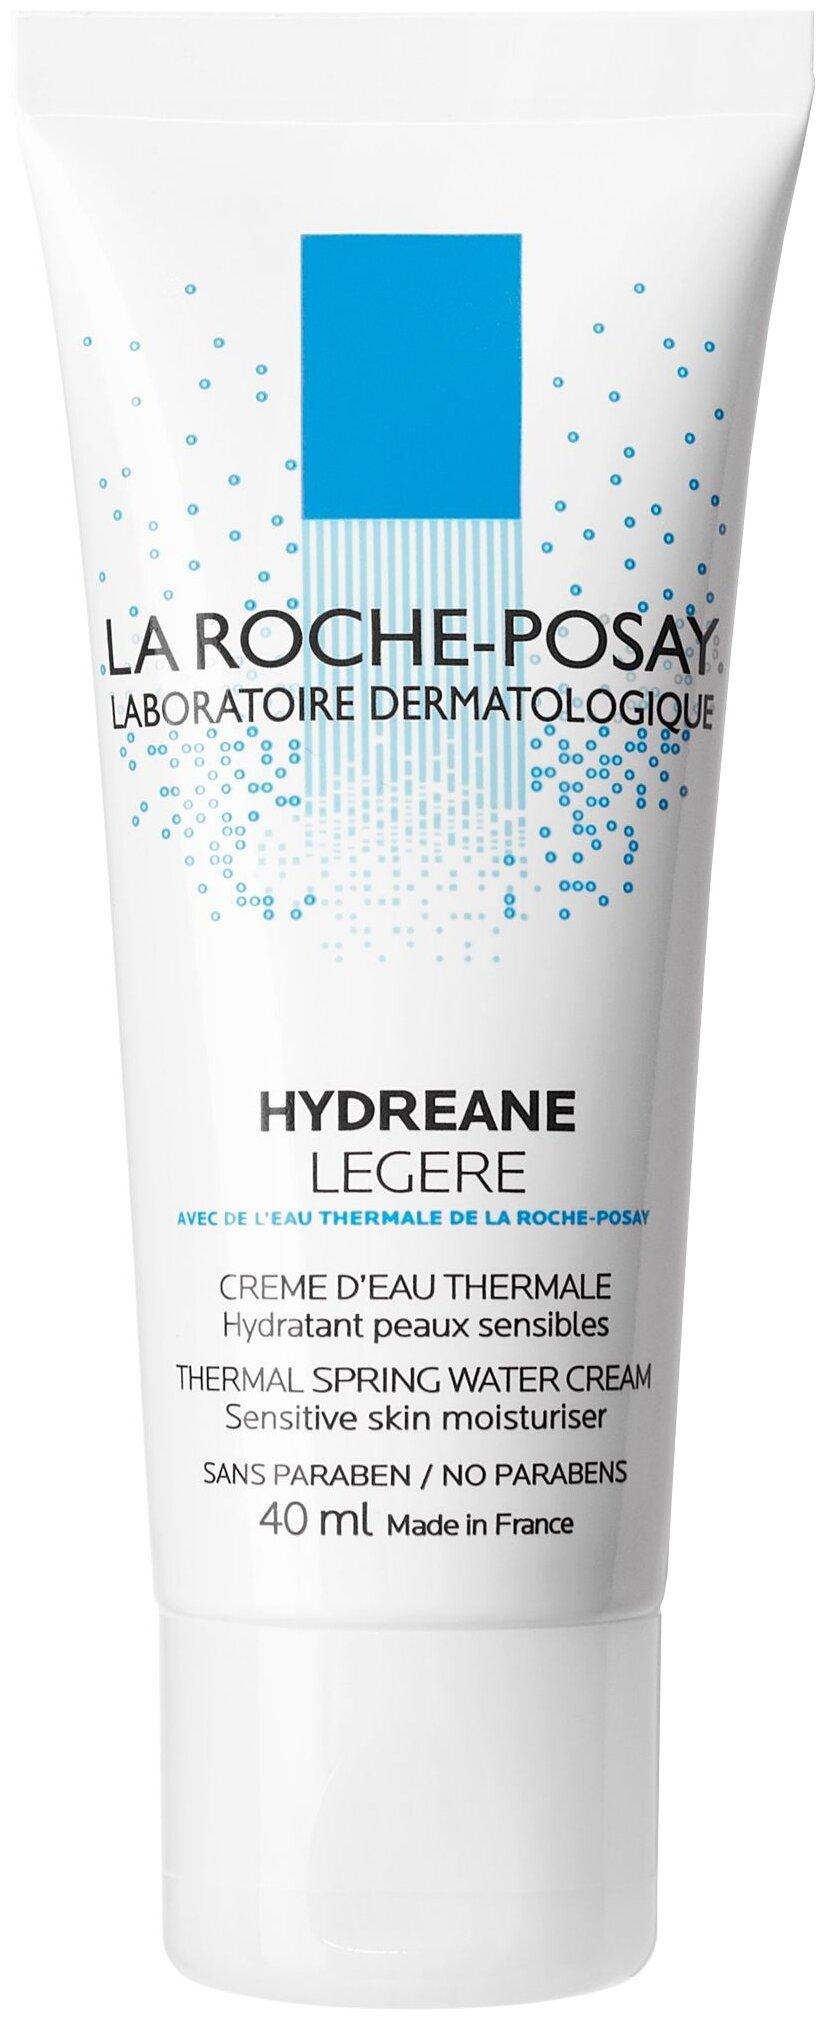 La Roche-Posay Hydreane Legere